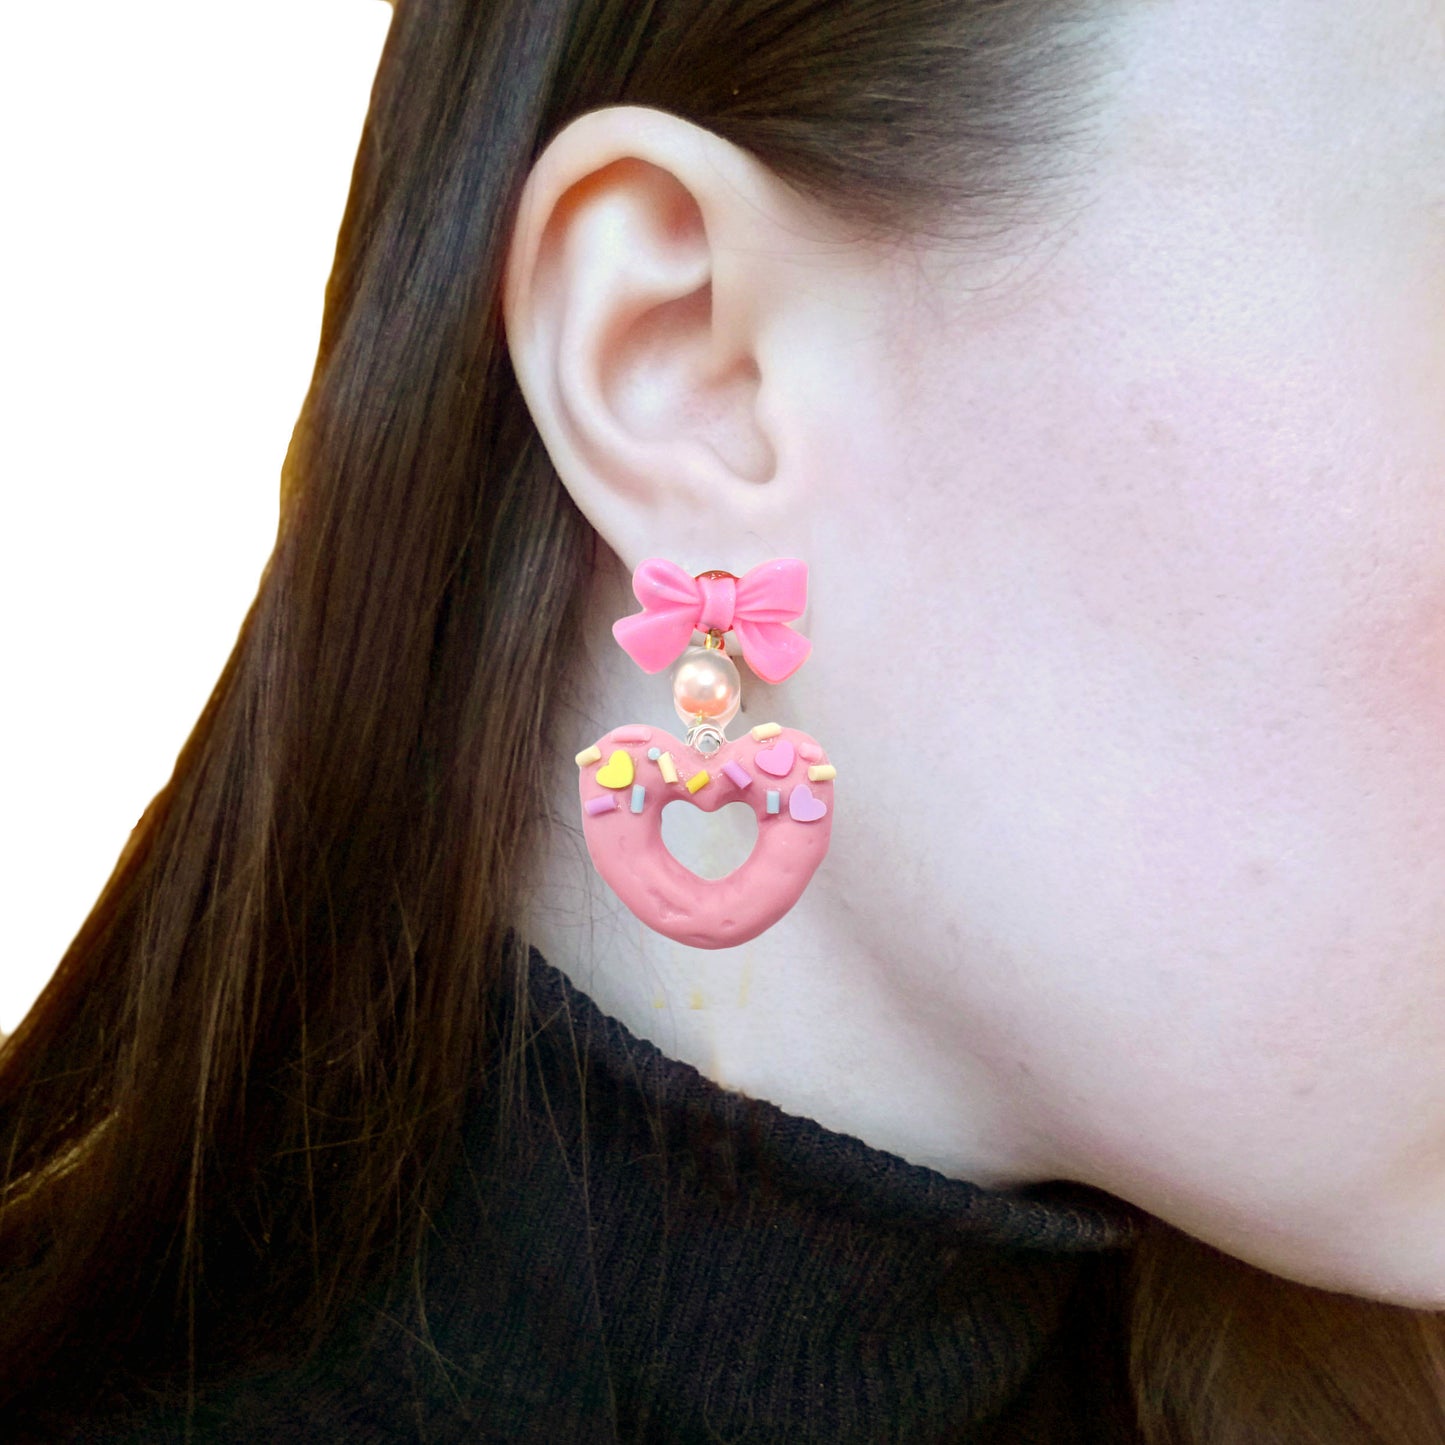 Heart Donut Earrings - Pink or Purple - Hypoallergenic - Fatally Feminine Designs